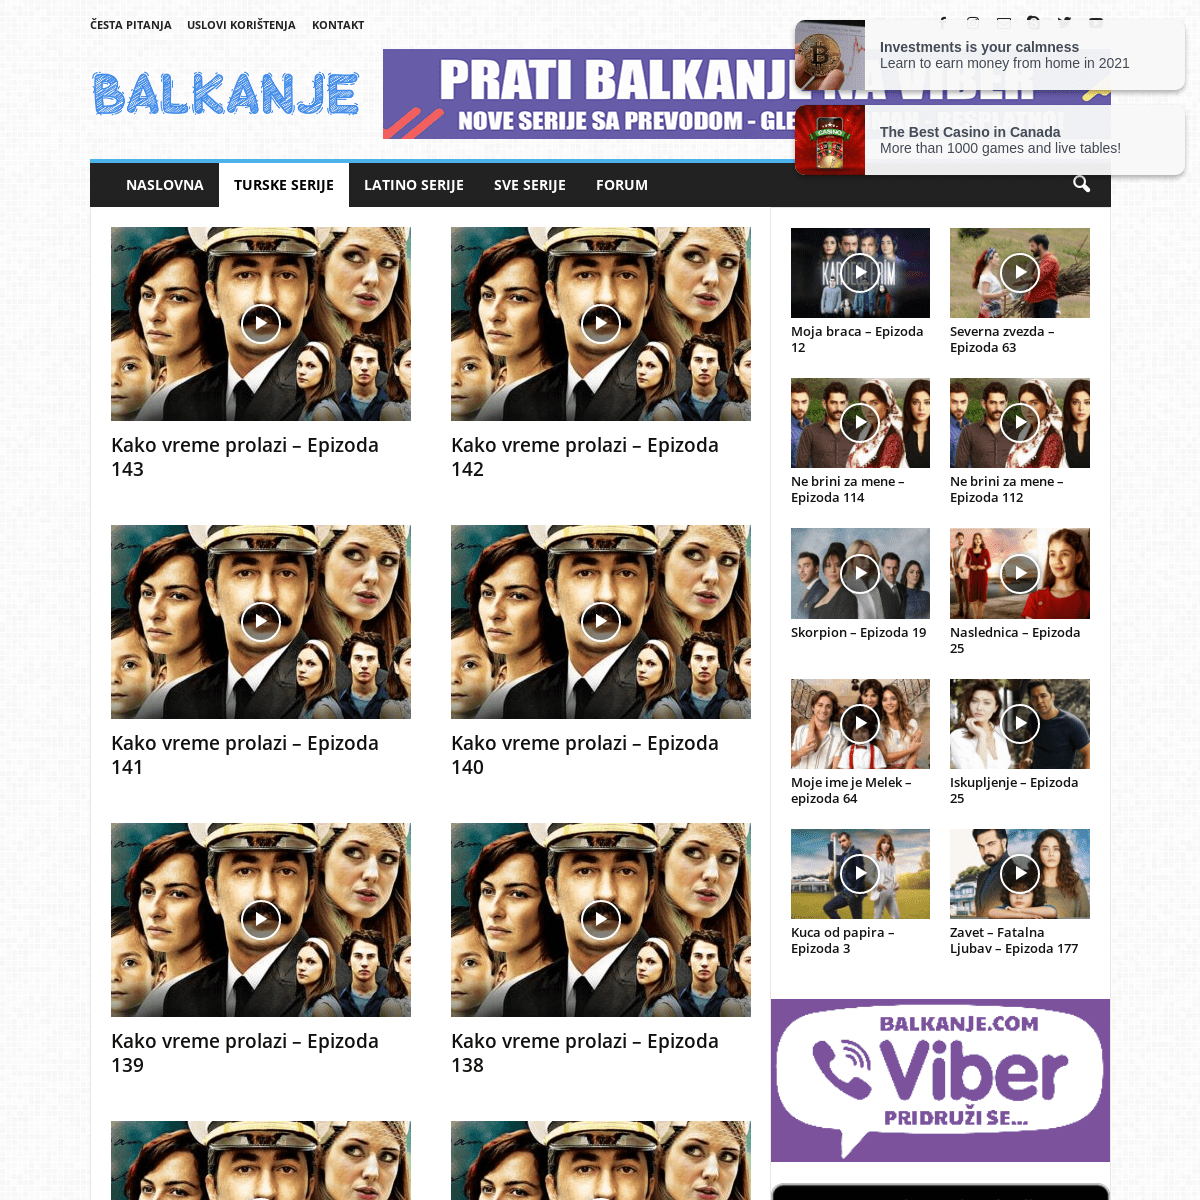 A complete backup of https://balkanje.com/turske-serije/kako-vreme-prolazi/